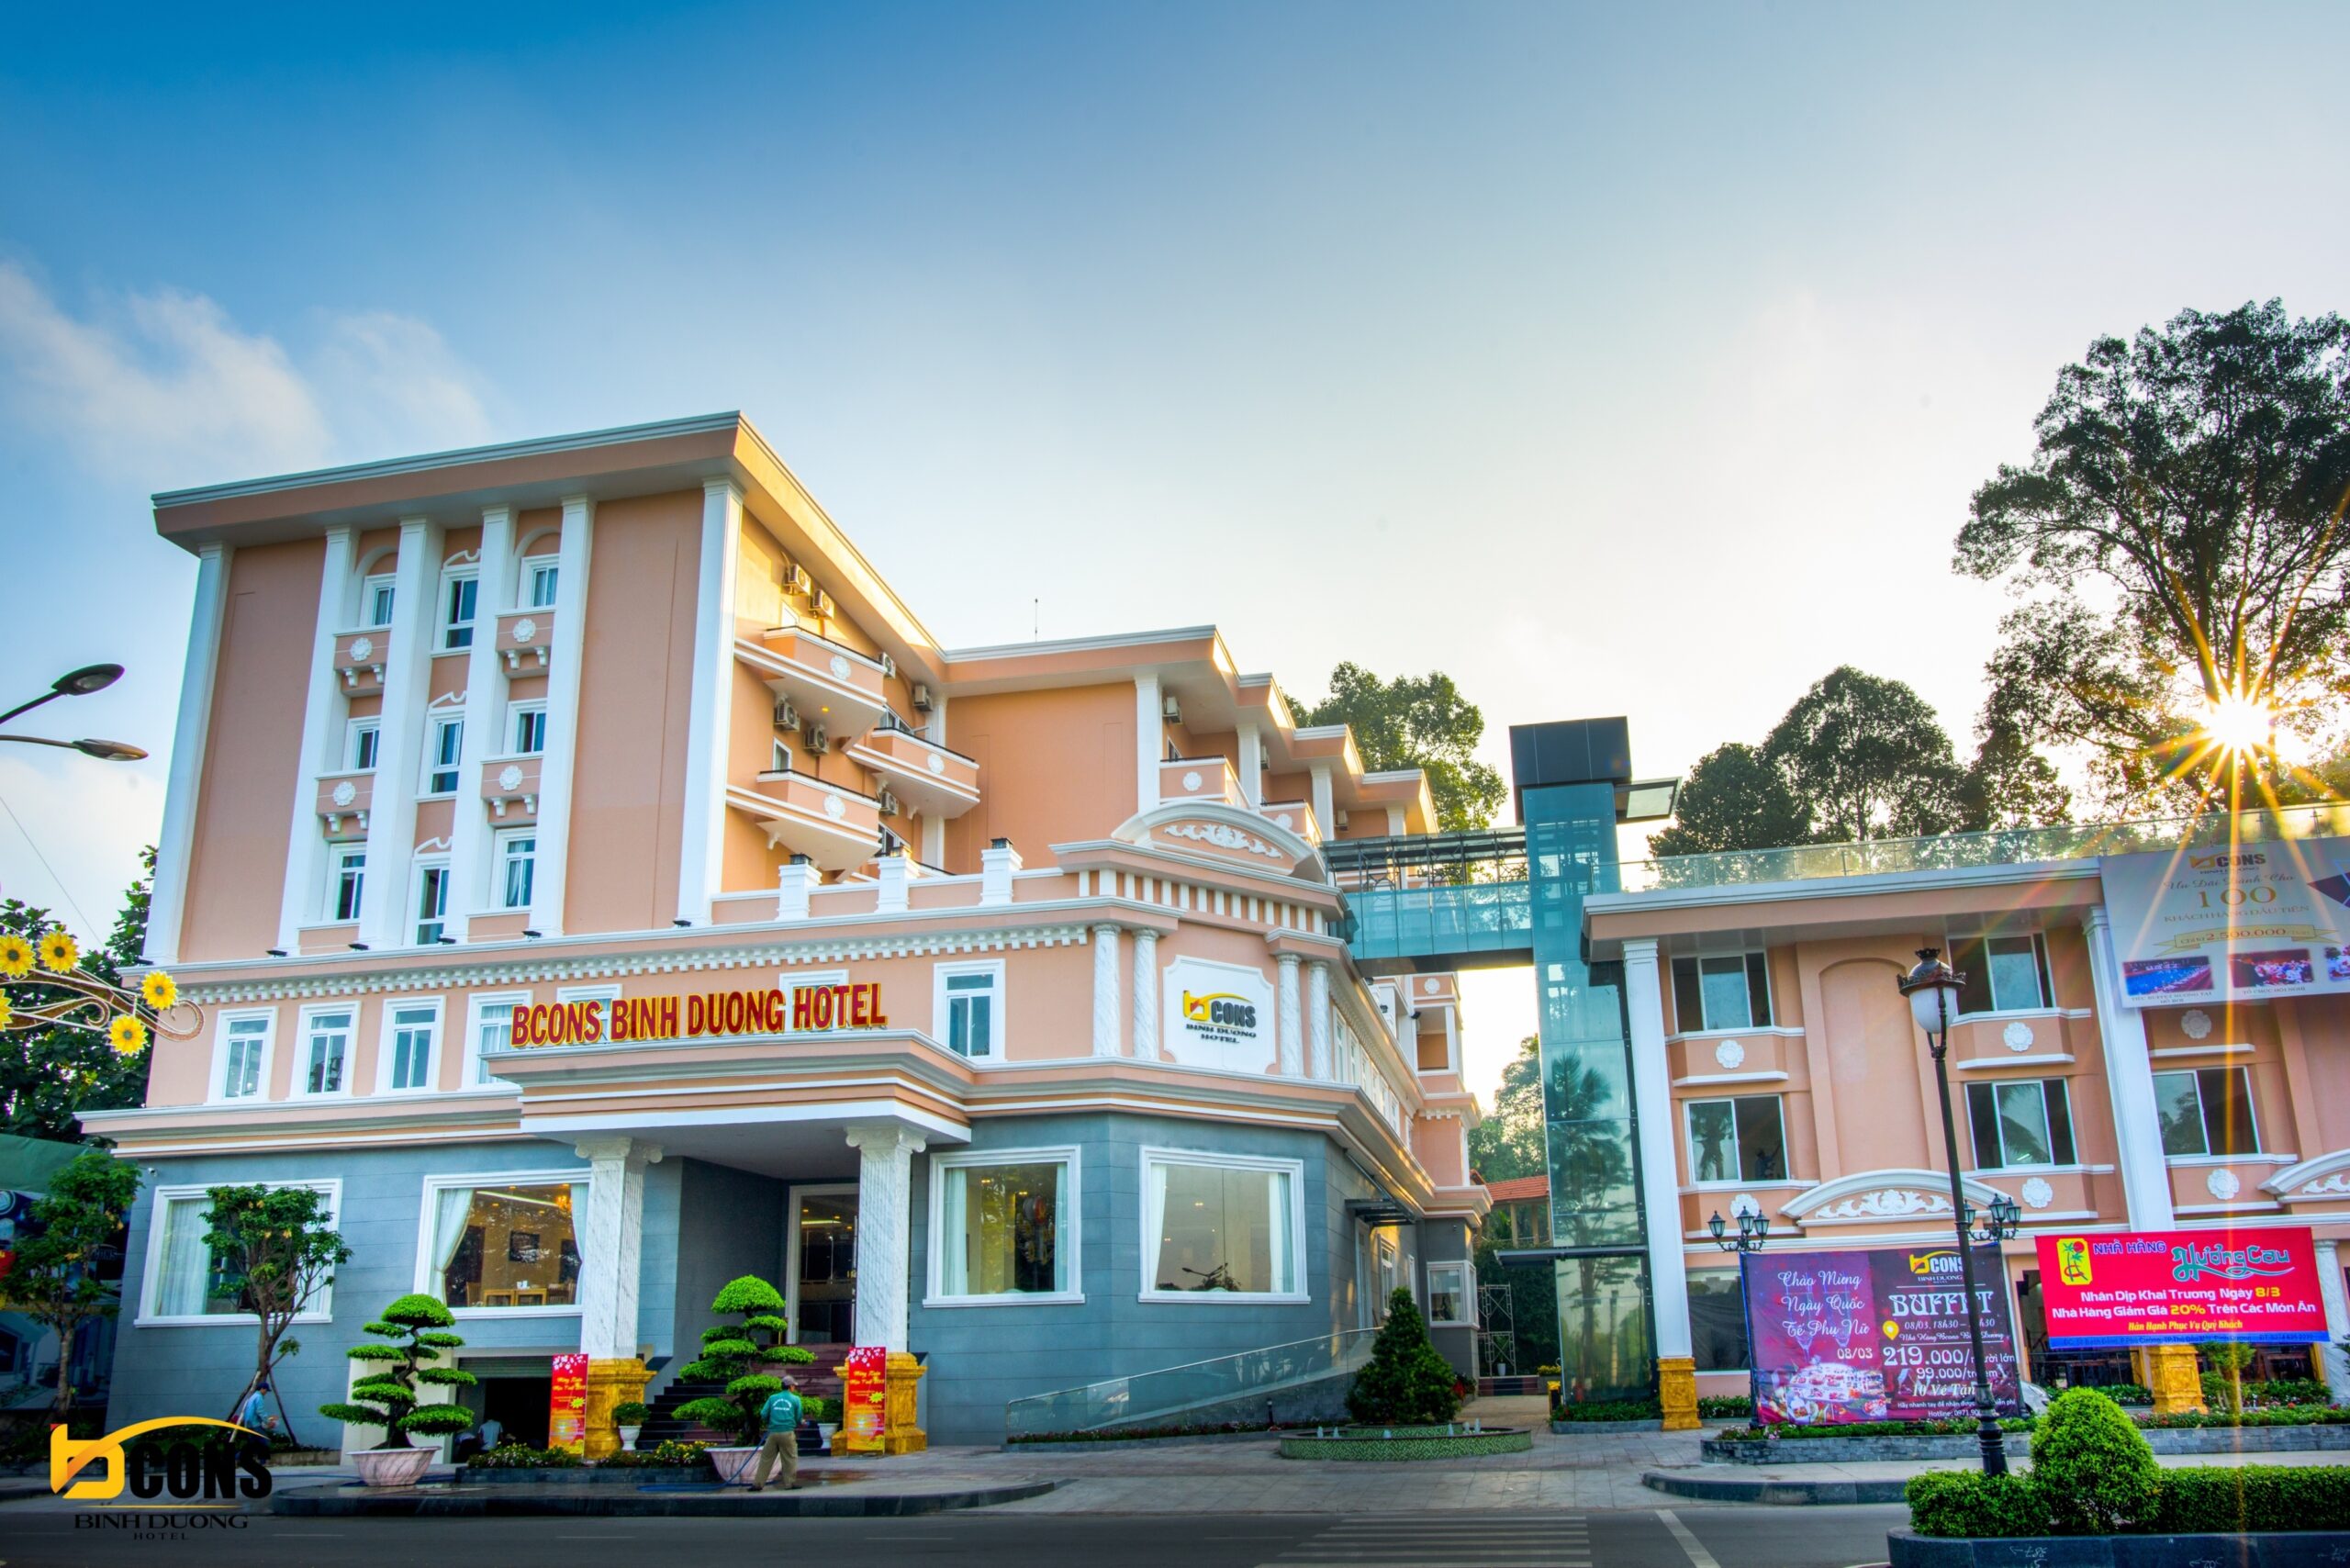 Bcons Binh Duong Hotel